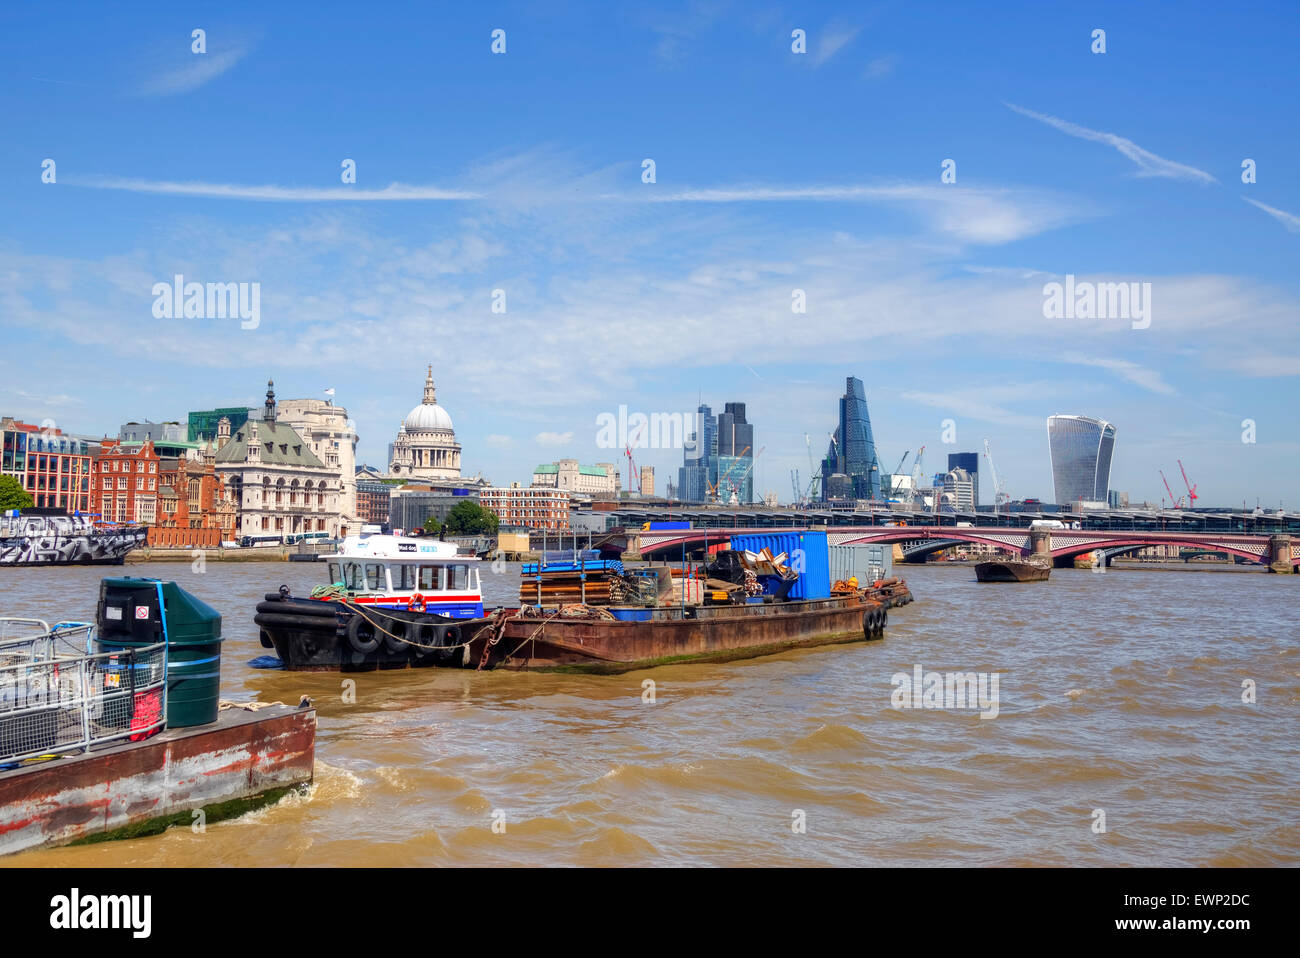 City of London, England, United Kingdom Stock Photo